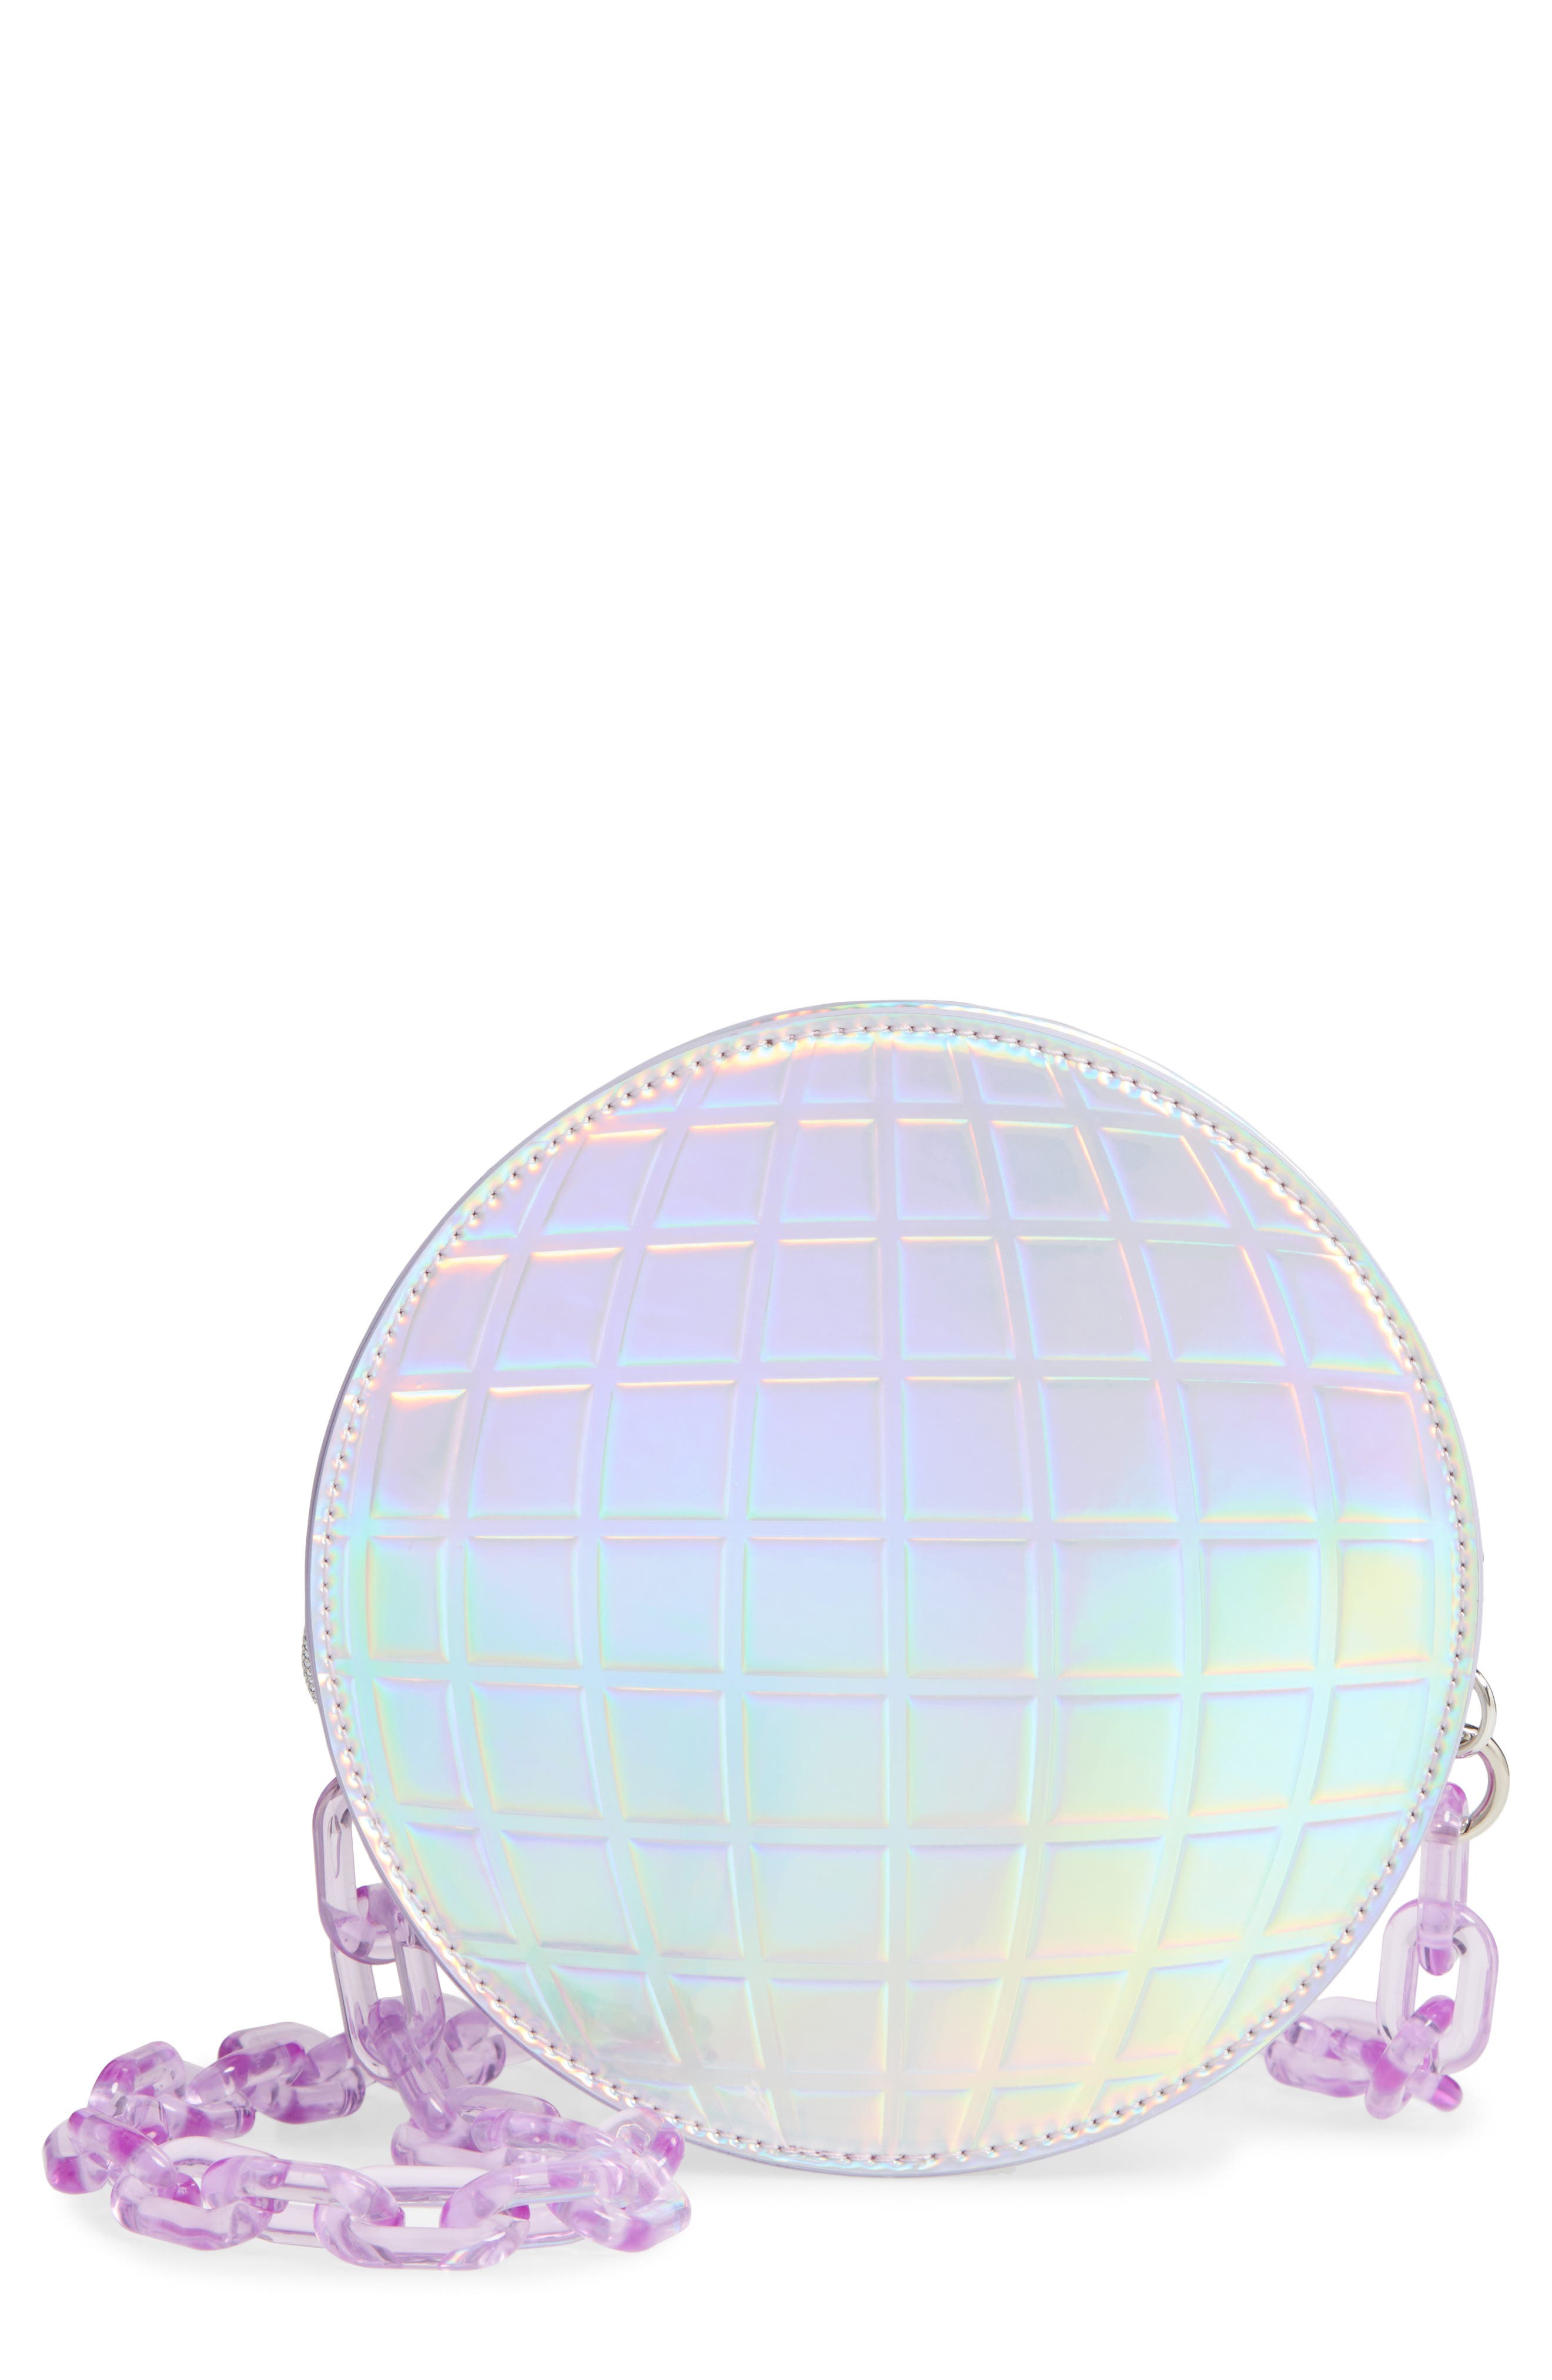 disco ball handbag